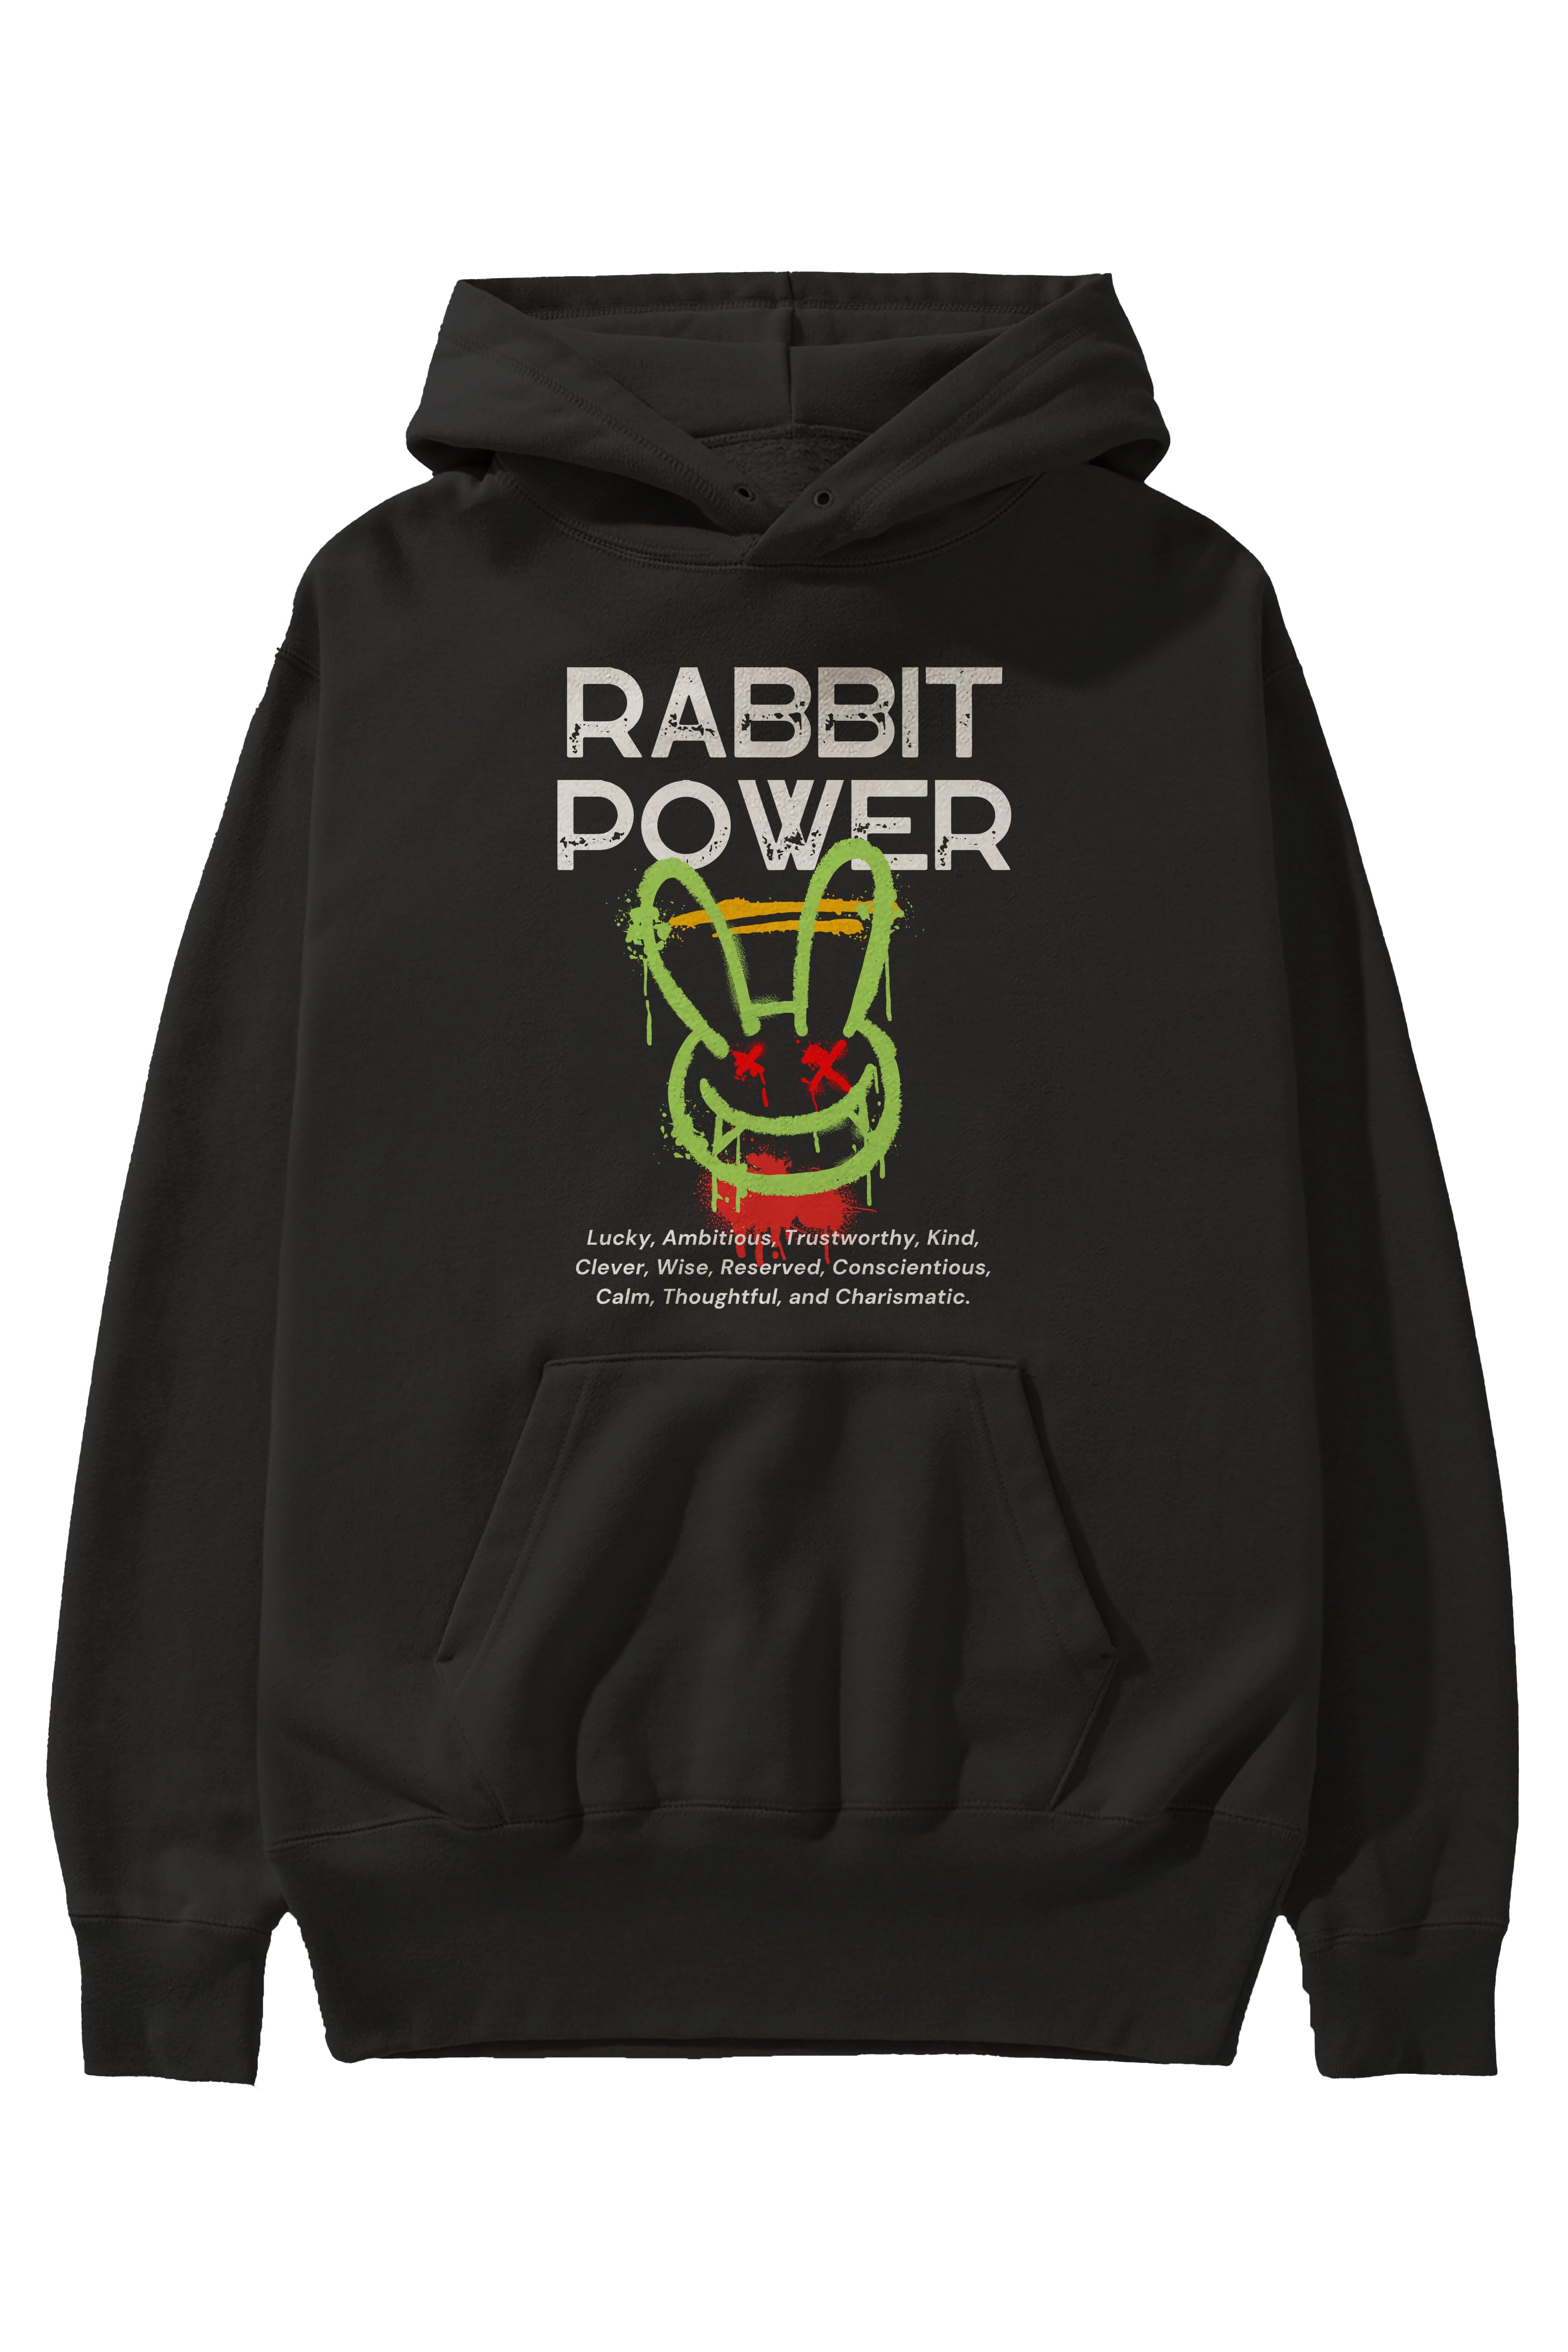 Rabbit Power Yazılı Ön Baskılı Oversize Hoodie Kapüşonlu Sweatshirt Erkek Kadın Unisex